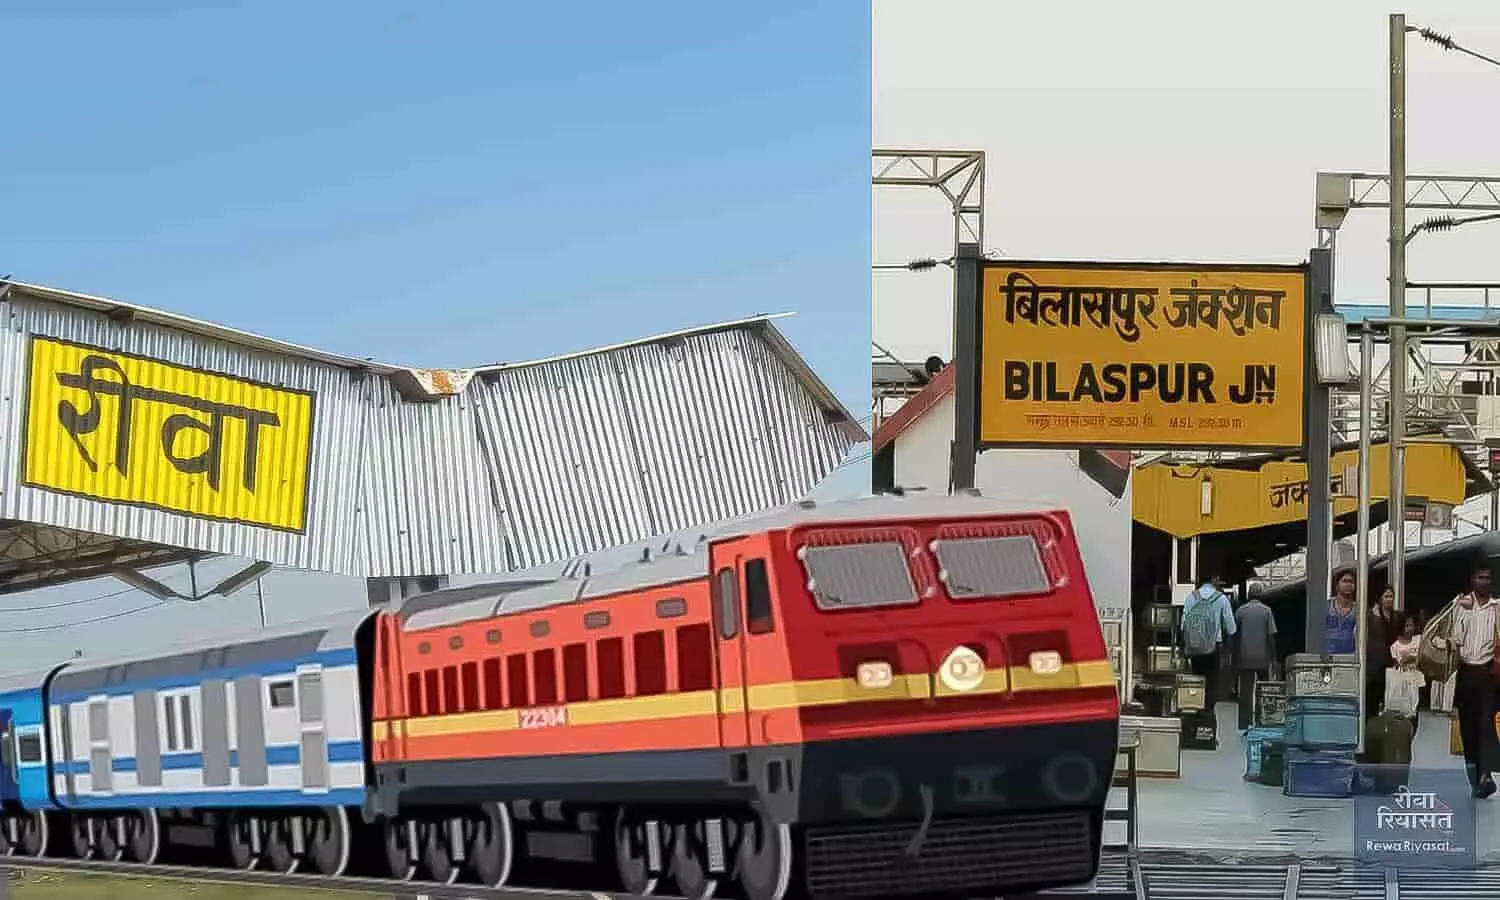 Rewa Bilaspur Express Train News